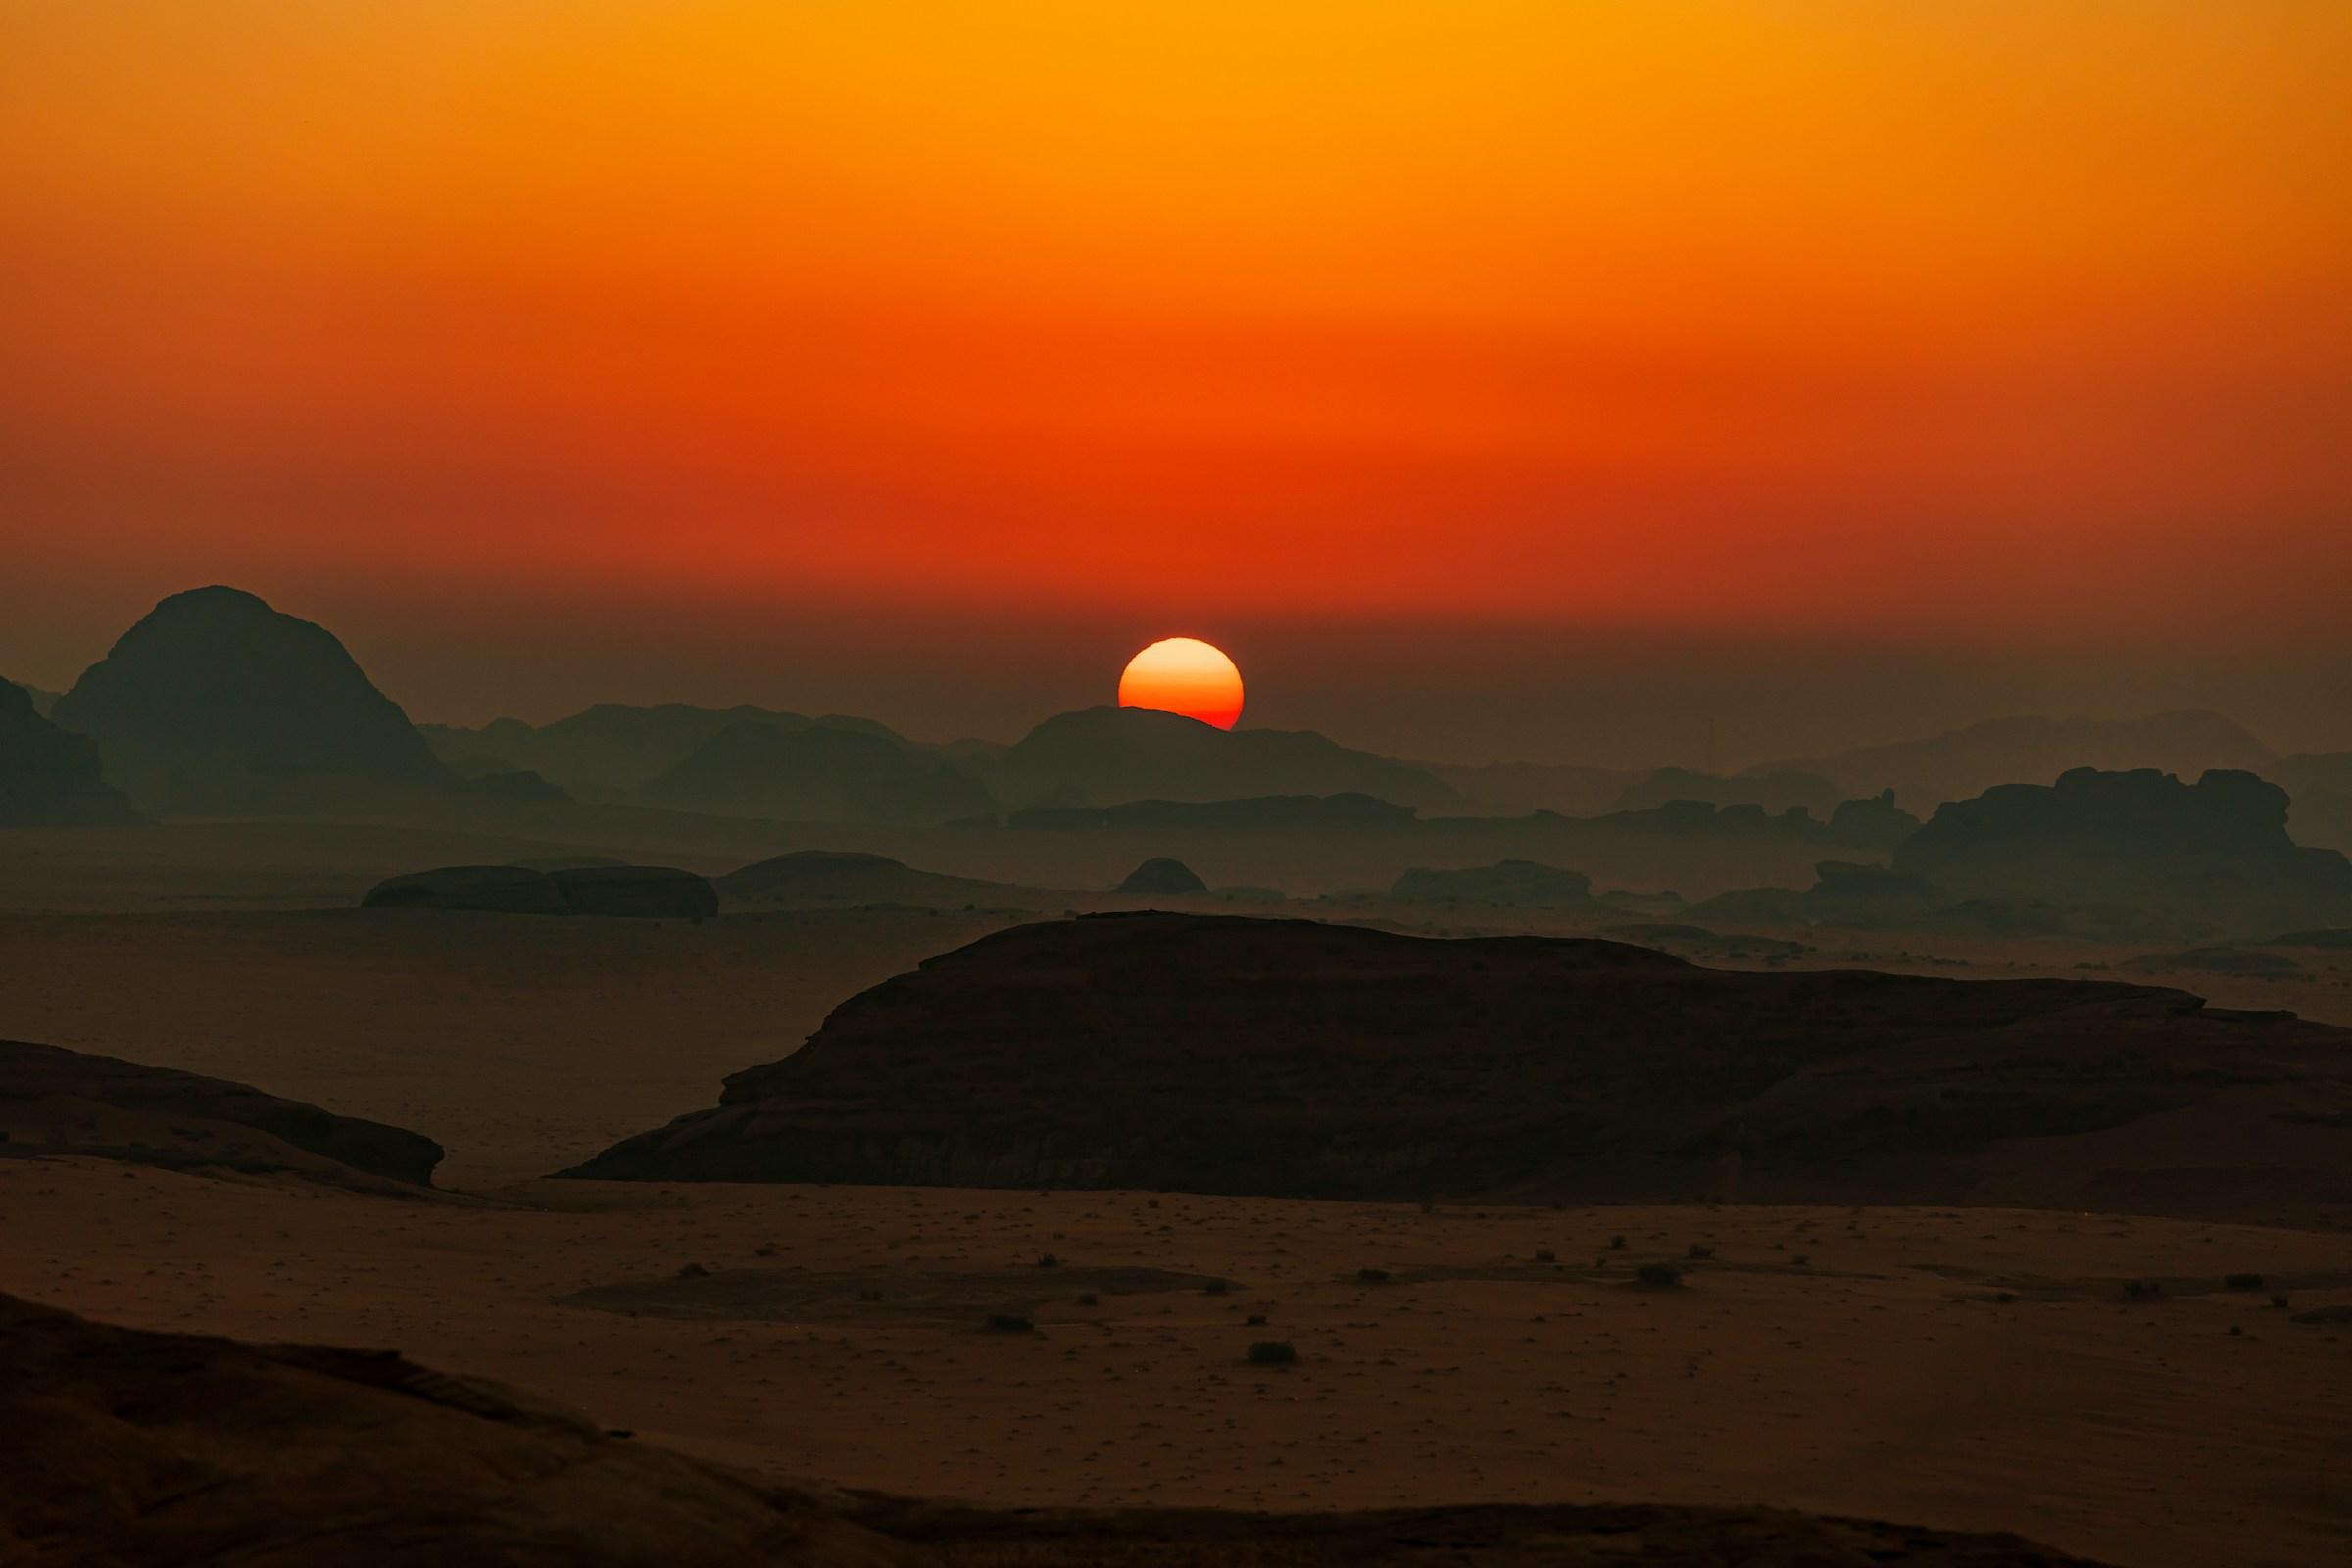 Sunset over desert